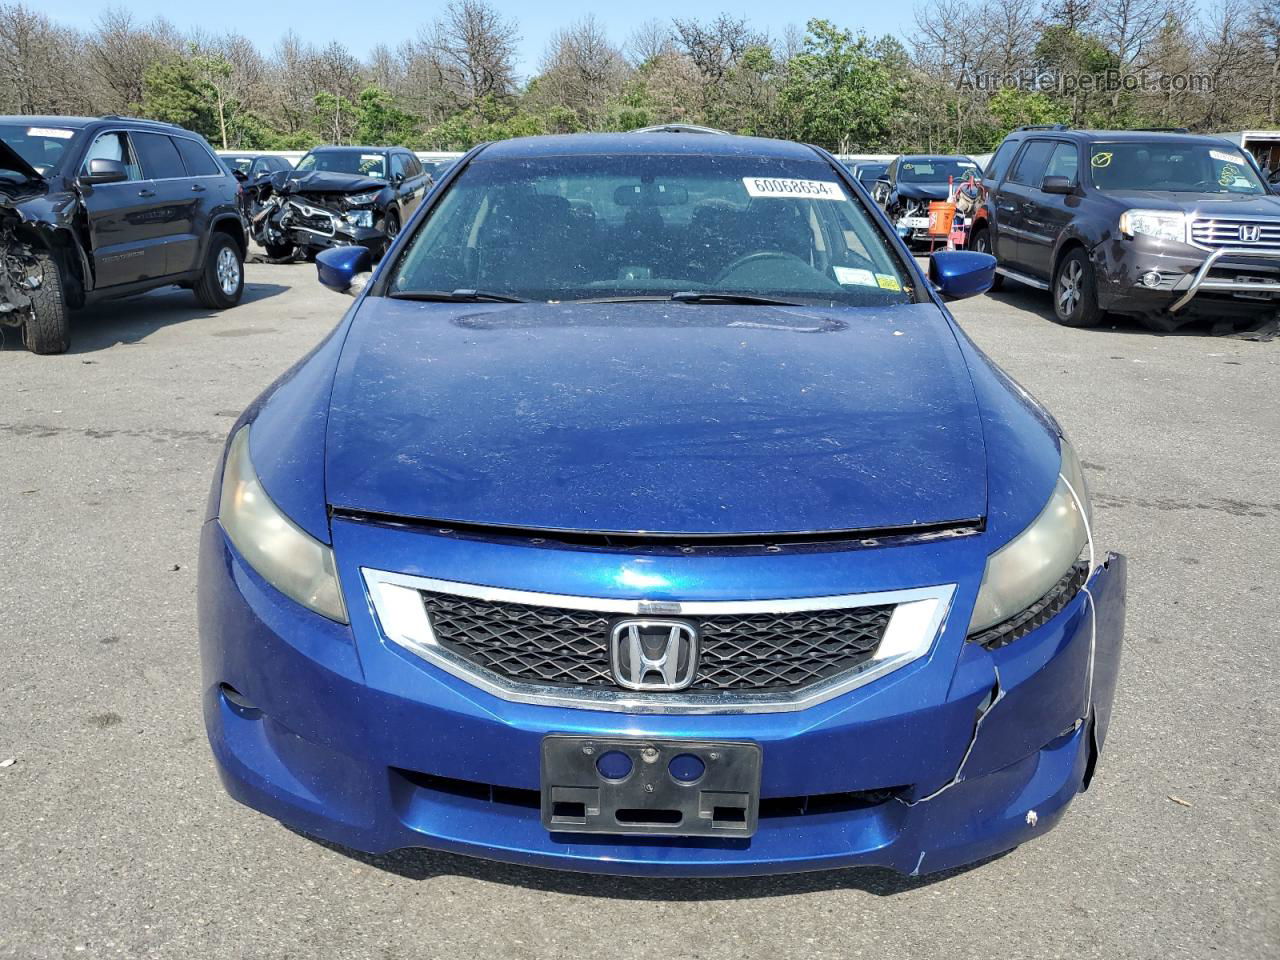 2008 Honda Accord Lx-s Blue vin: 1HGCS12398A024454